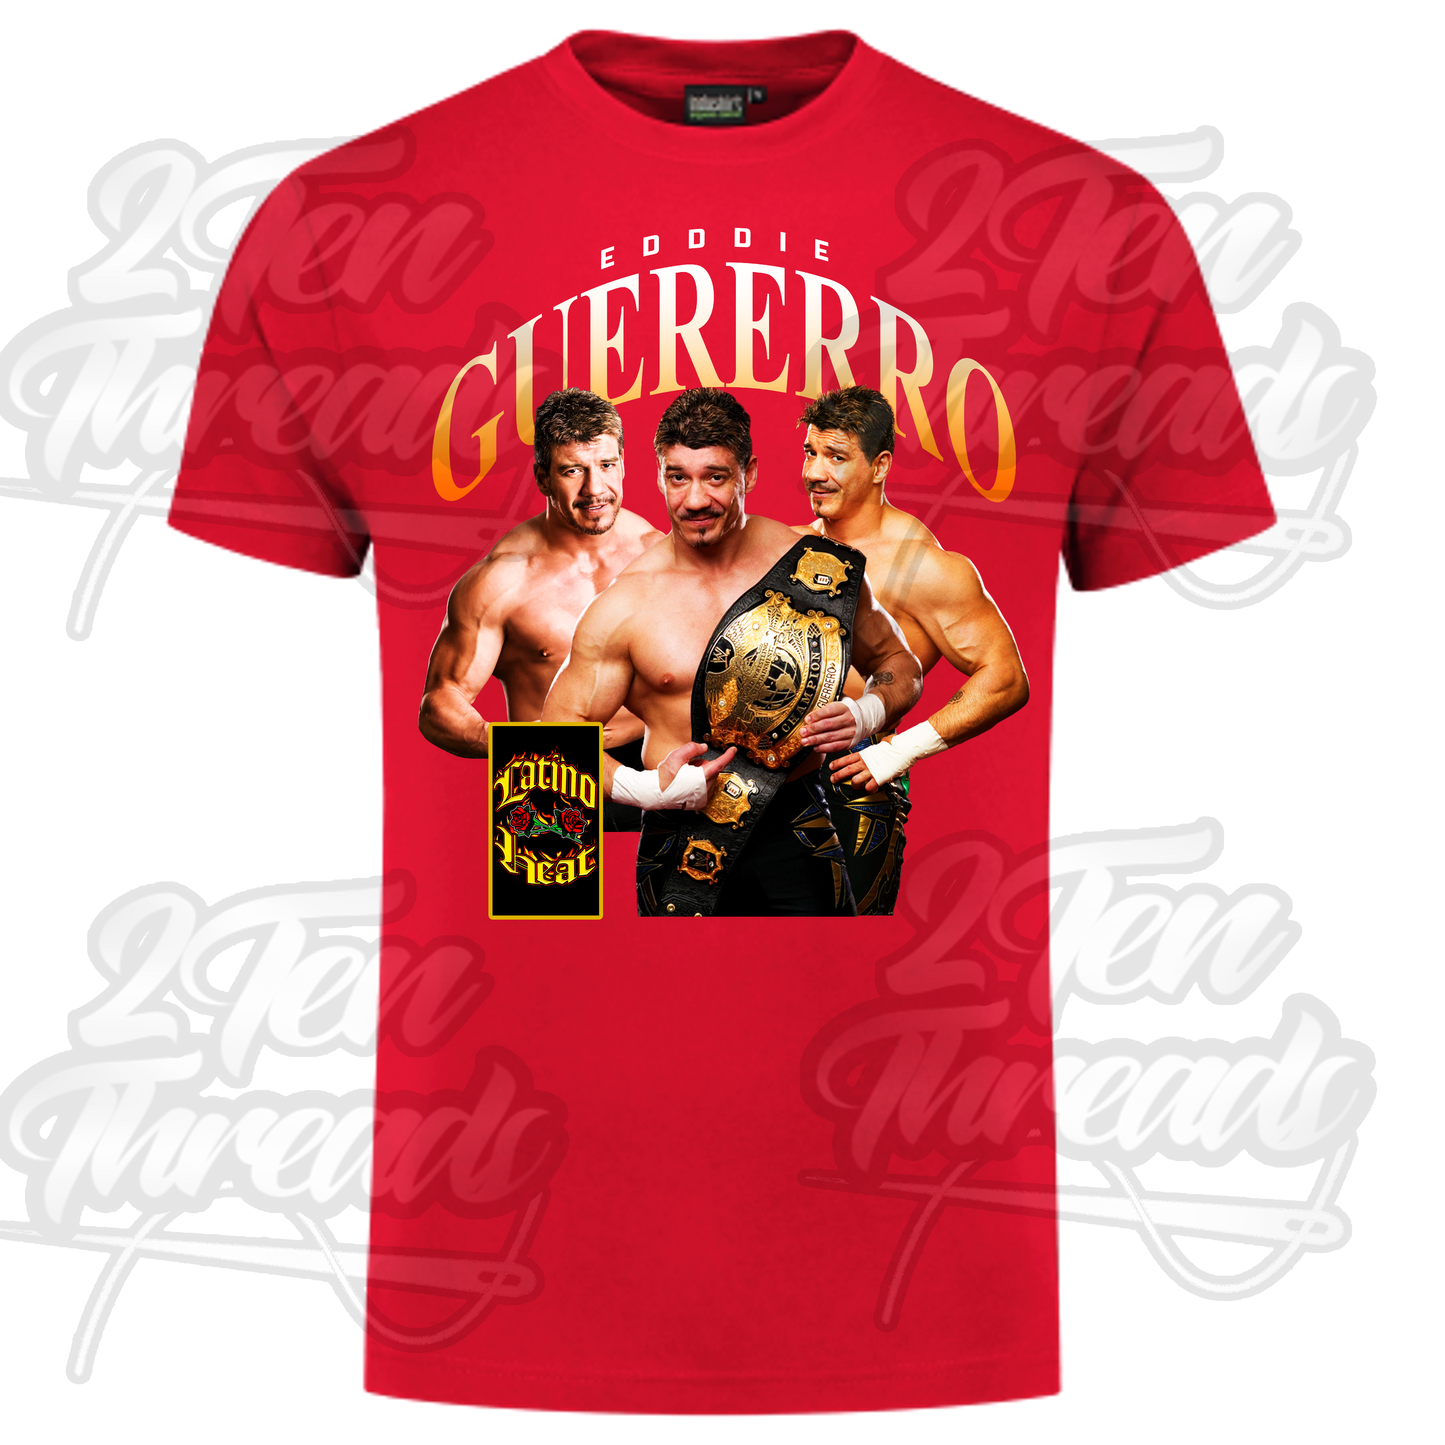 Eddie Guerrero Shirt